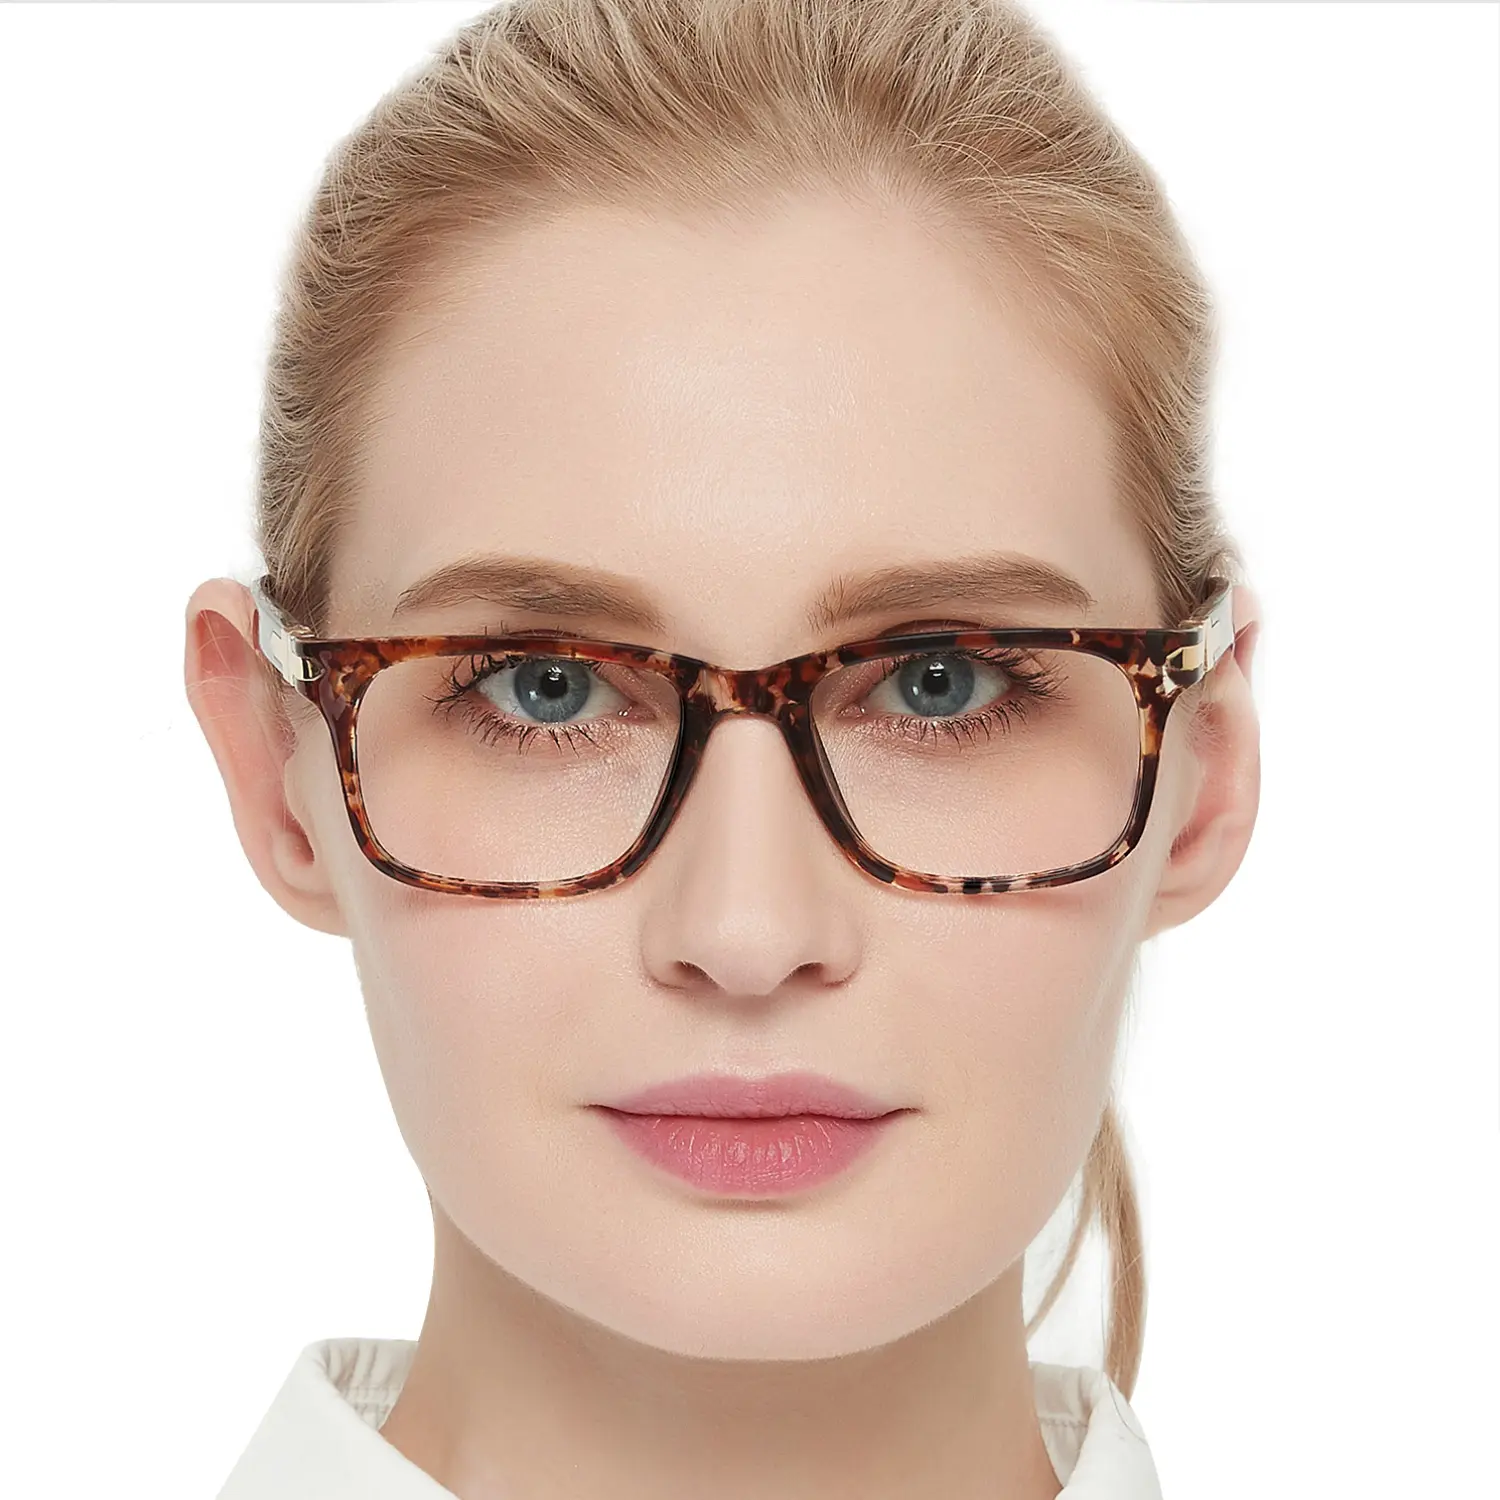 Gözlük en kaliteli Retro kare kalınlığı okuma gözlüğü kadınlar için gözlük saf optik gözlük çerçeveleri